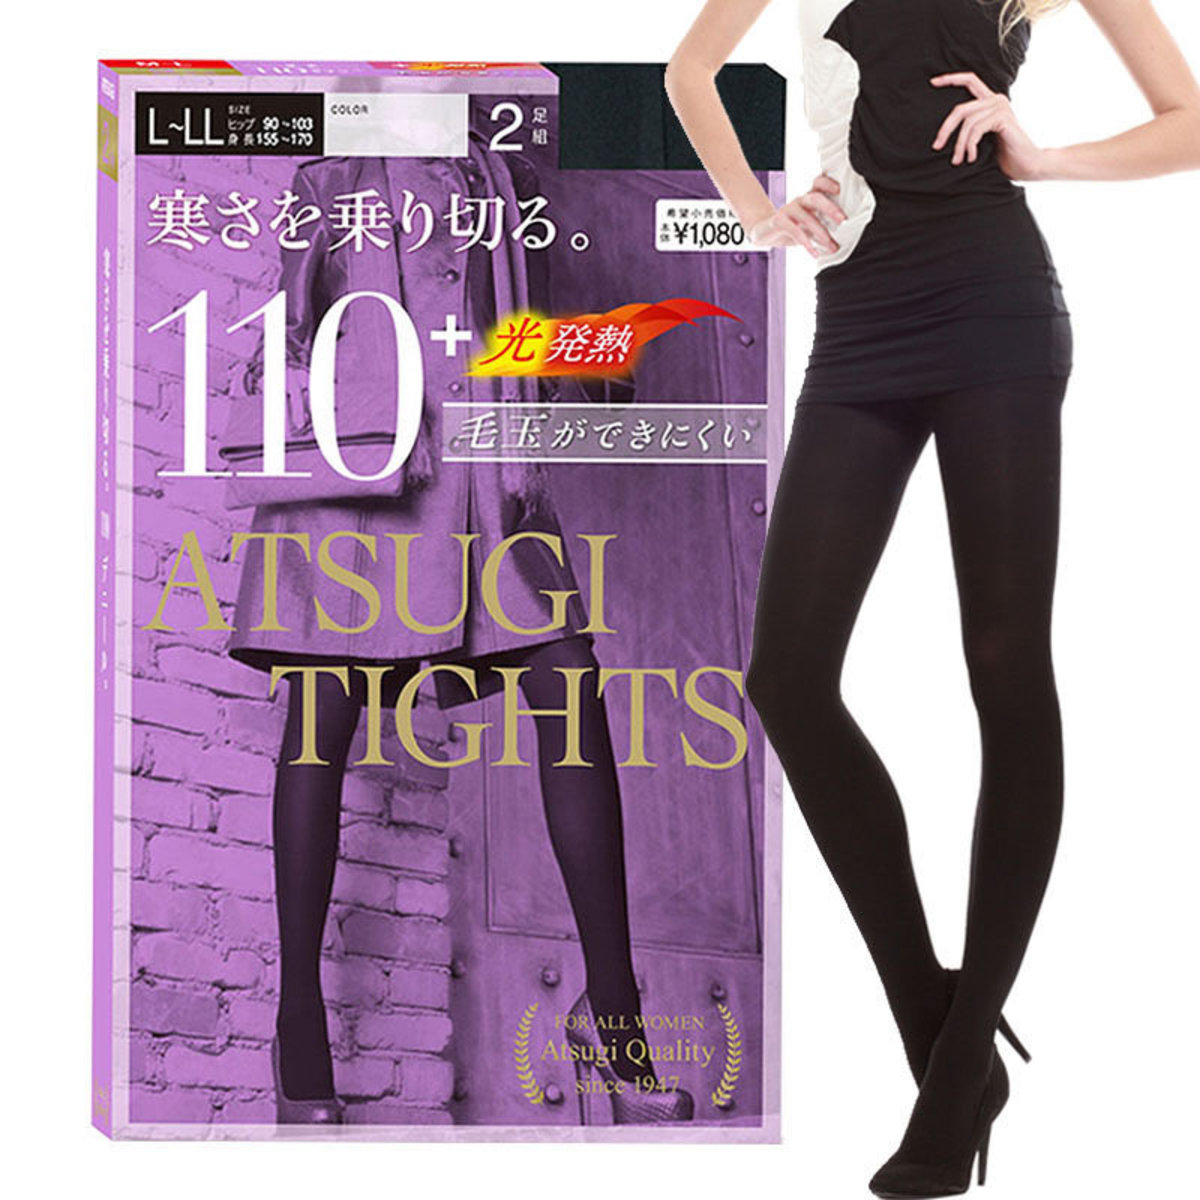 ATSUGI 厚木丝袜裤110D (L-LL码) "黑色"- 2对/包(视觉瘦脚发热保暖丝袜裤) 日本版(平行进口)